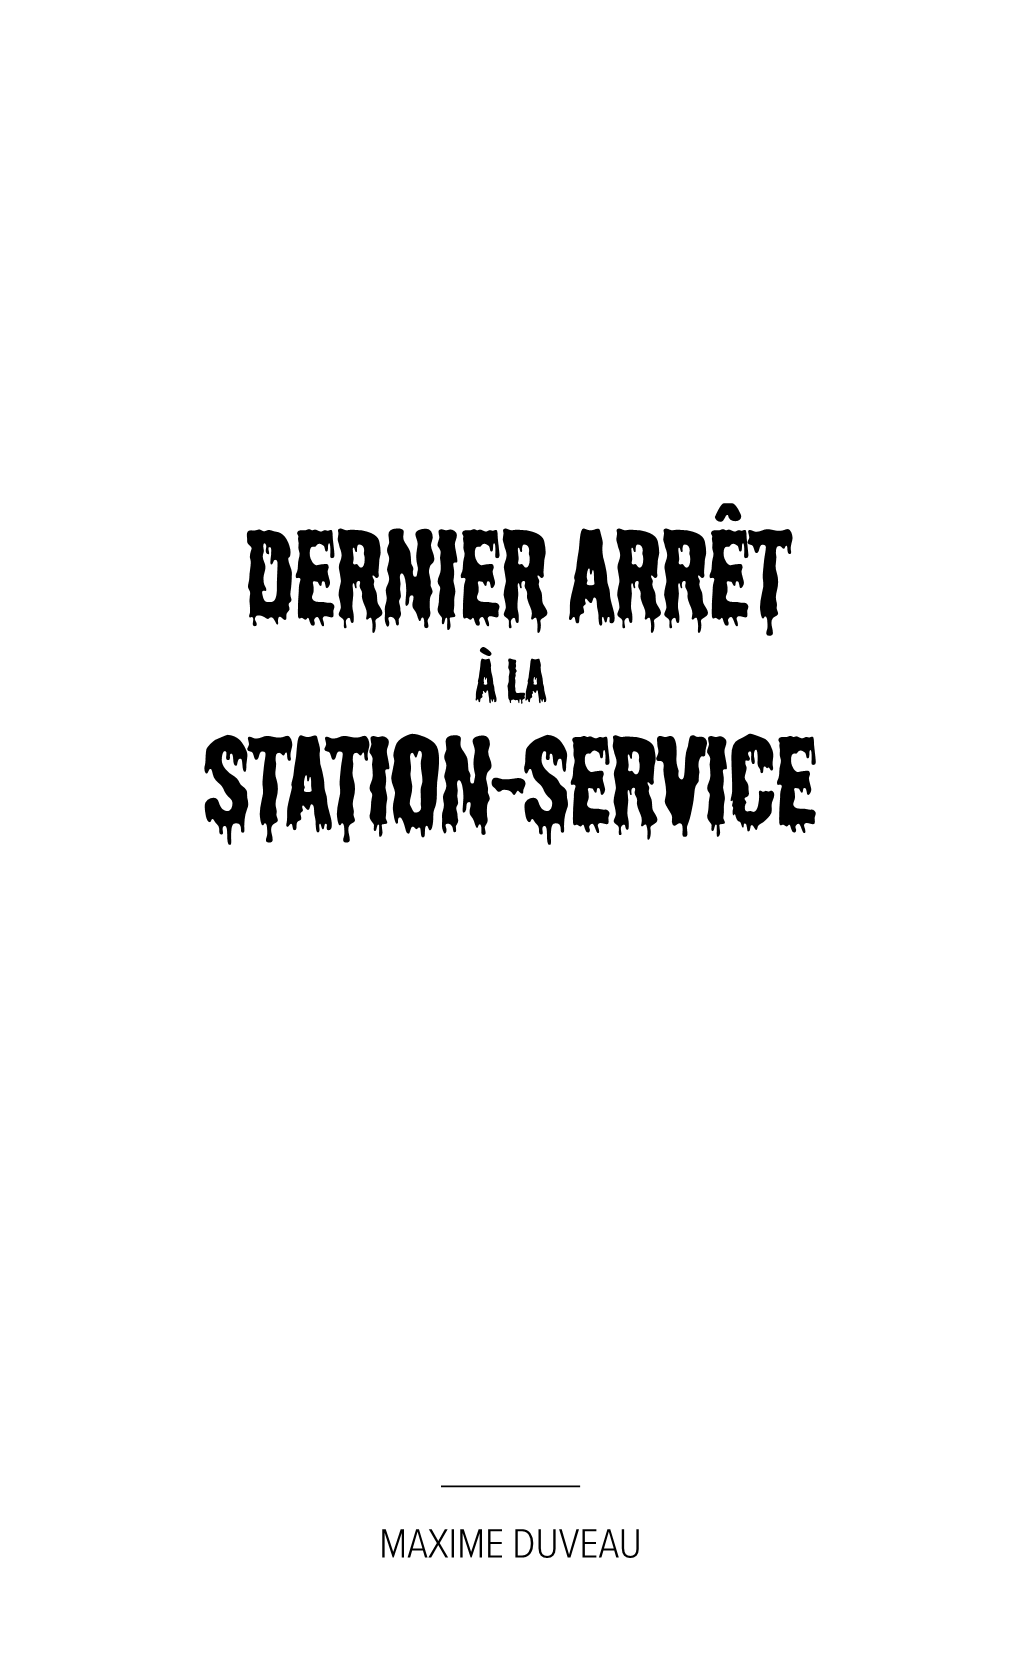 Station-Service